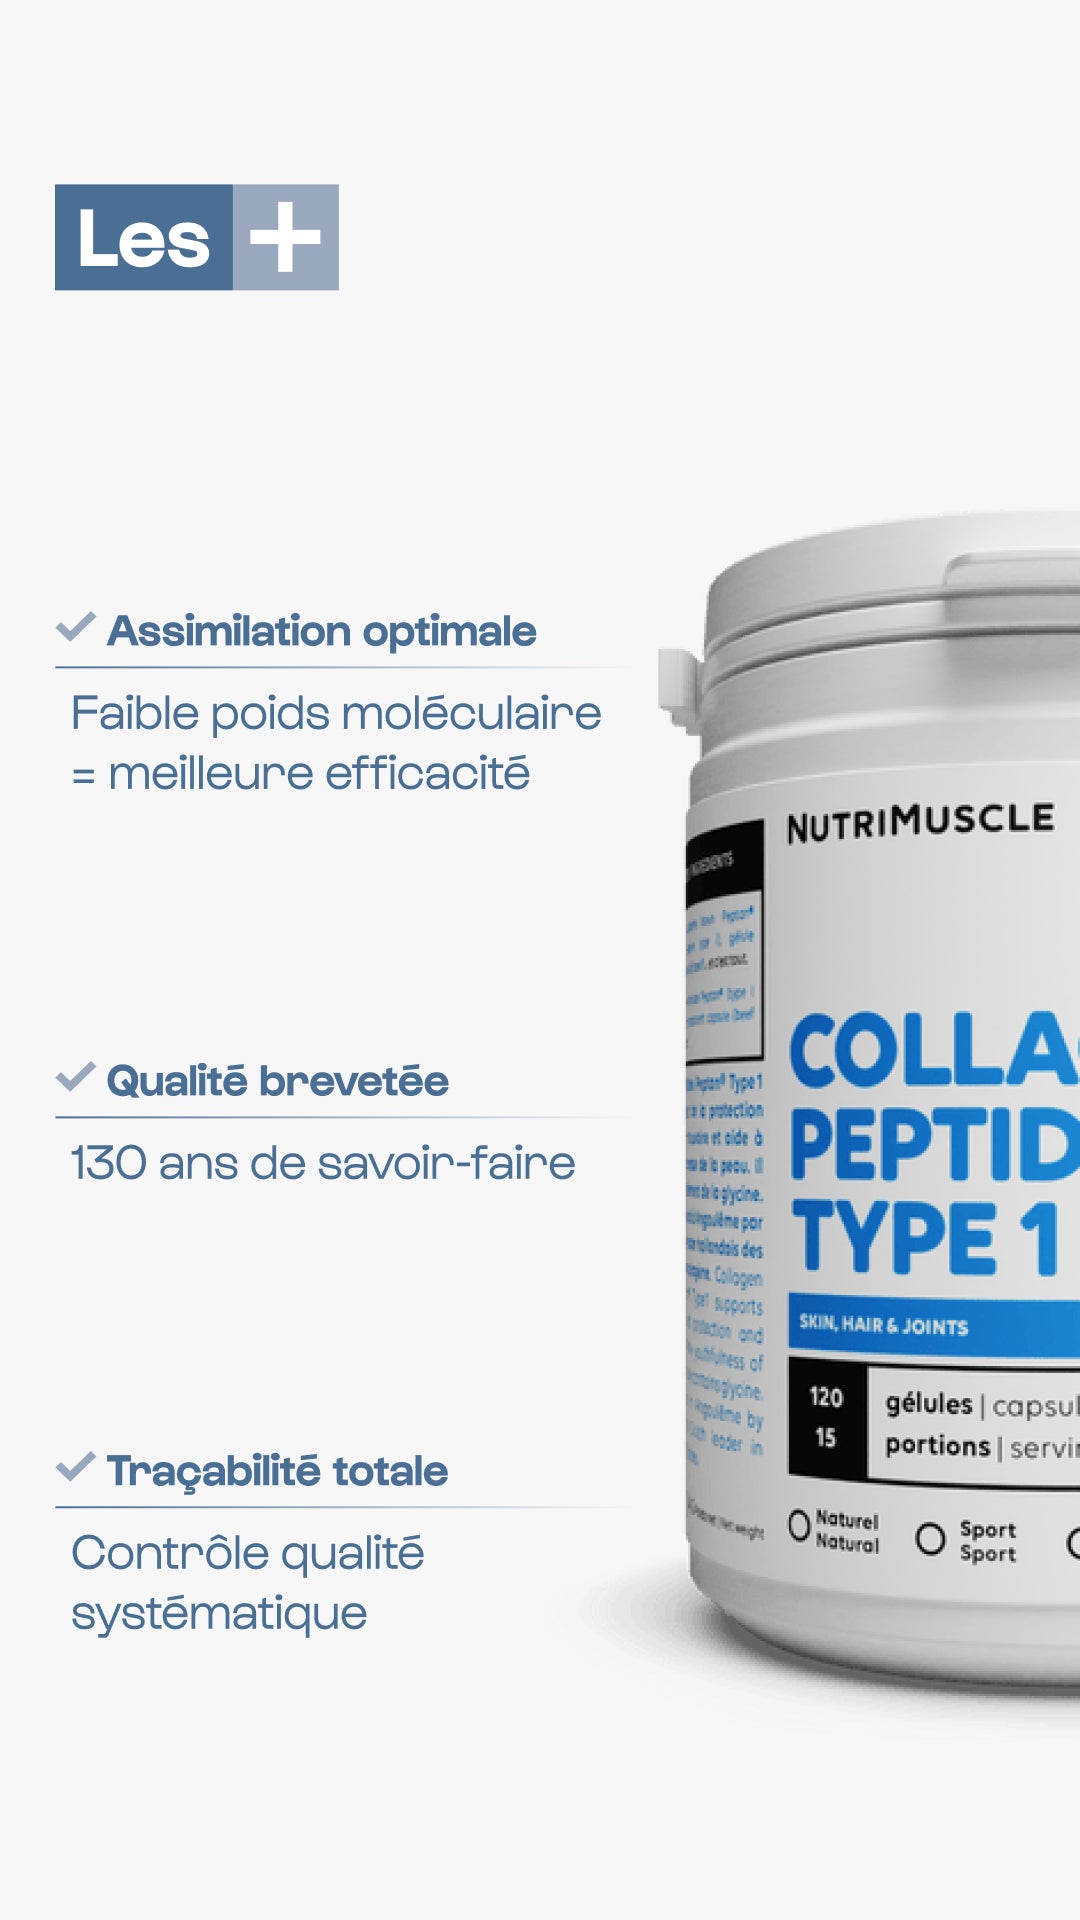 Collagène Peptides Peptan® 1 en poudre